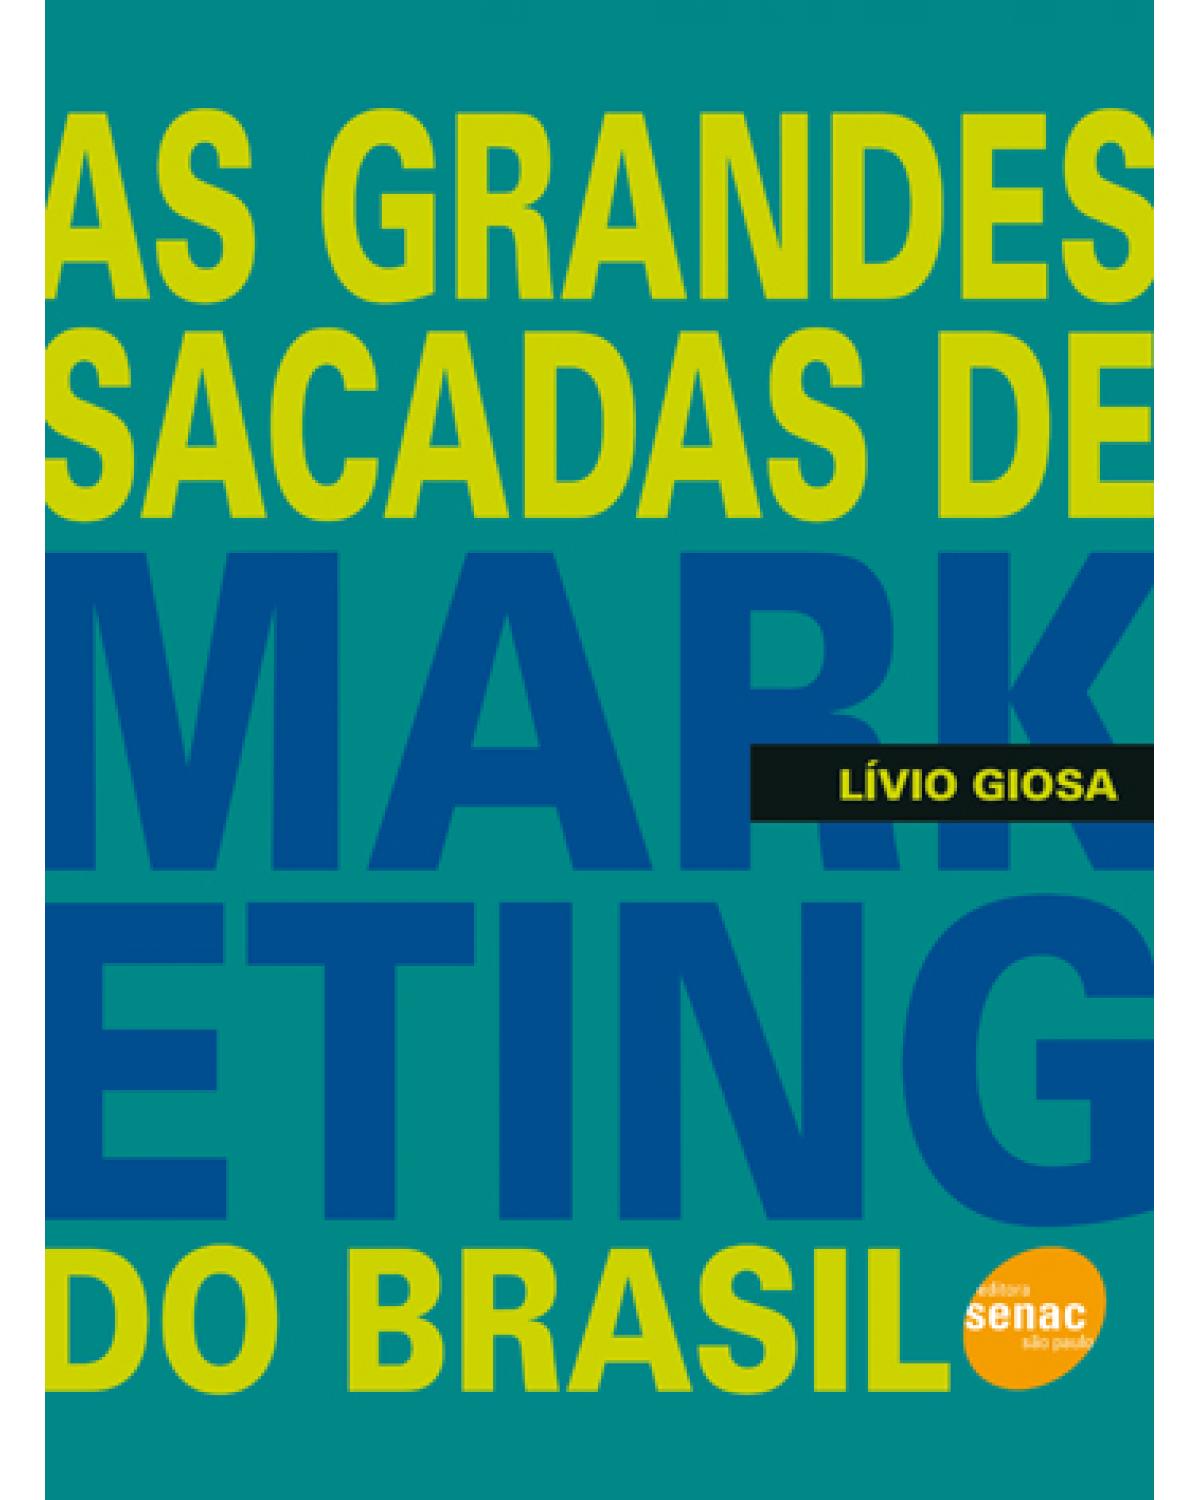 As grandes sacadas de marketing do Brasil - 1ª Edição